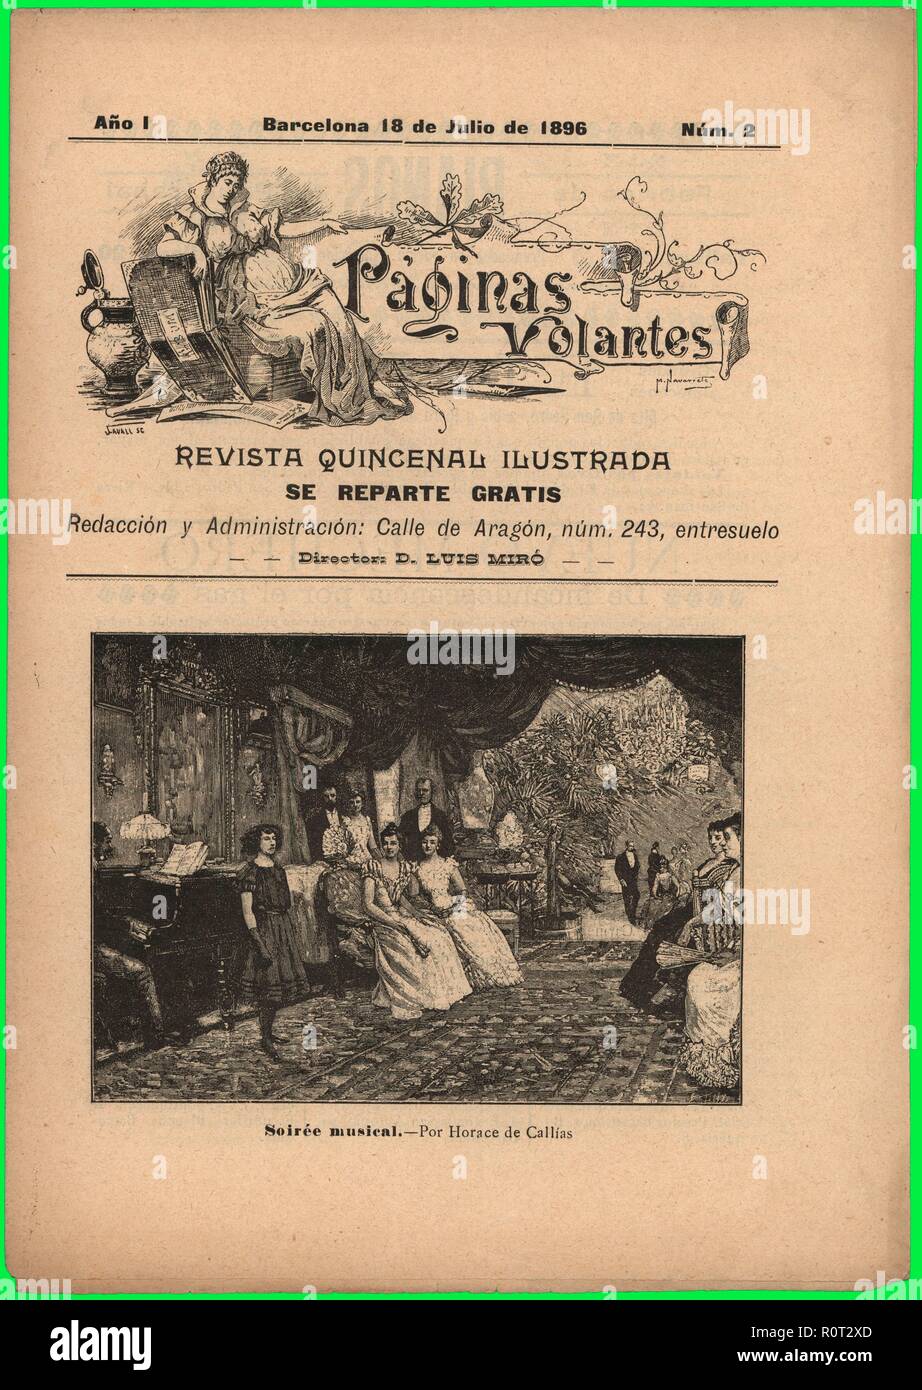 Portada de la revista Páginas Volantes, editada en Barcelona, julio de 1896. Foto Stock